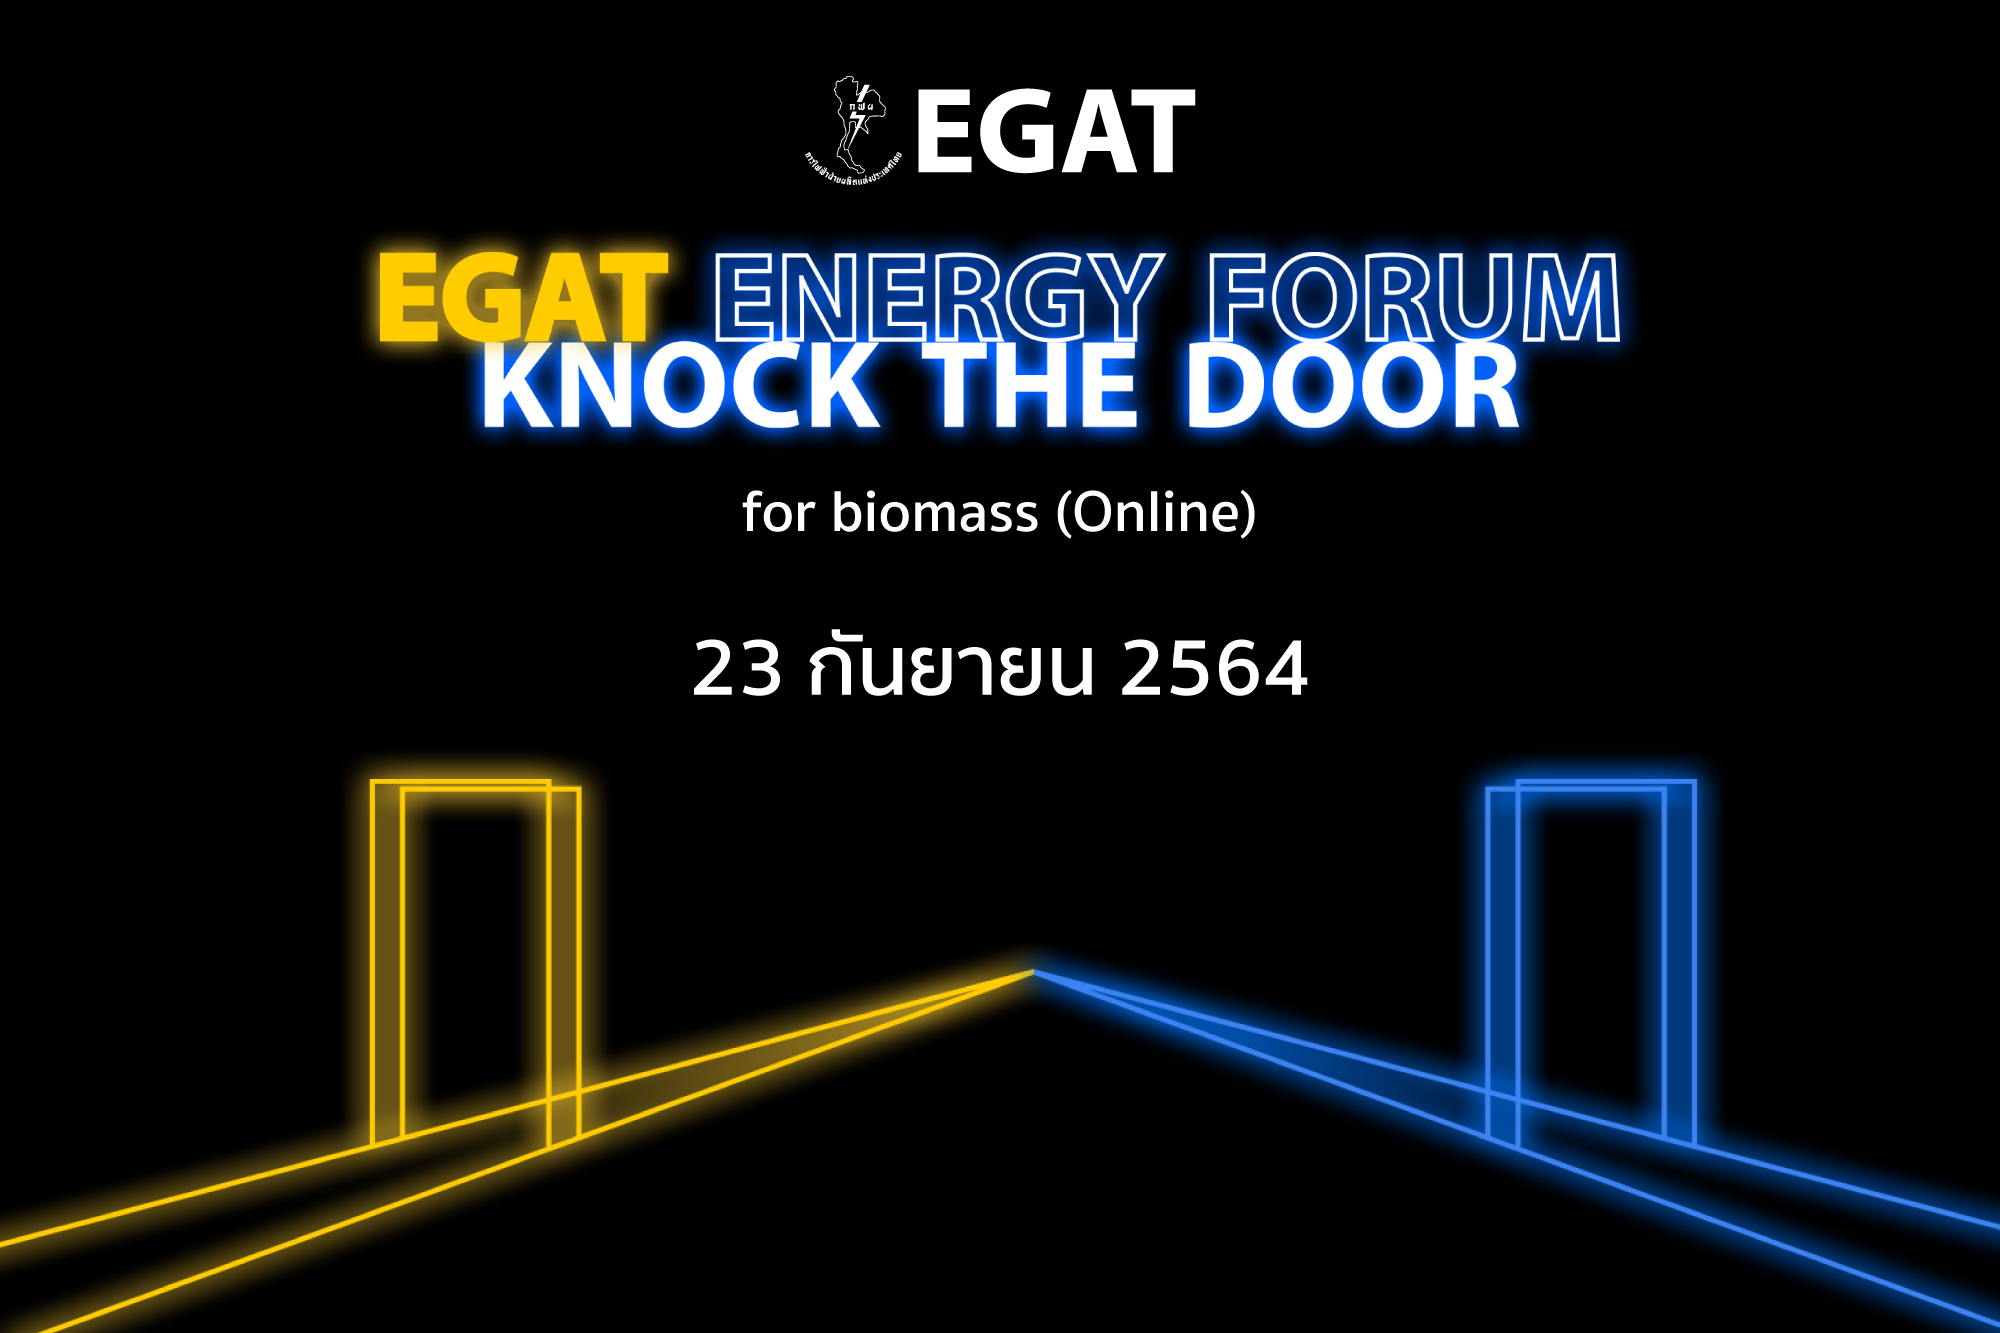 EGAT Energy Forum : Knock the door for biomass (online)